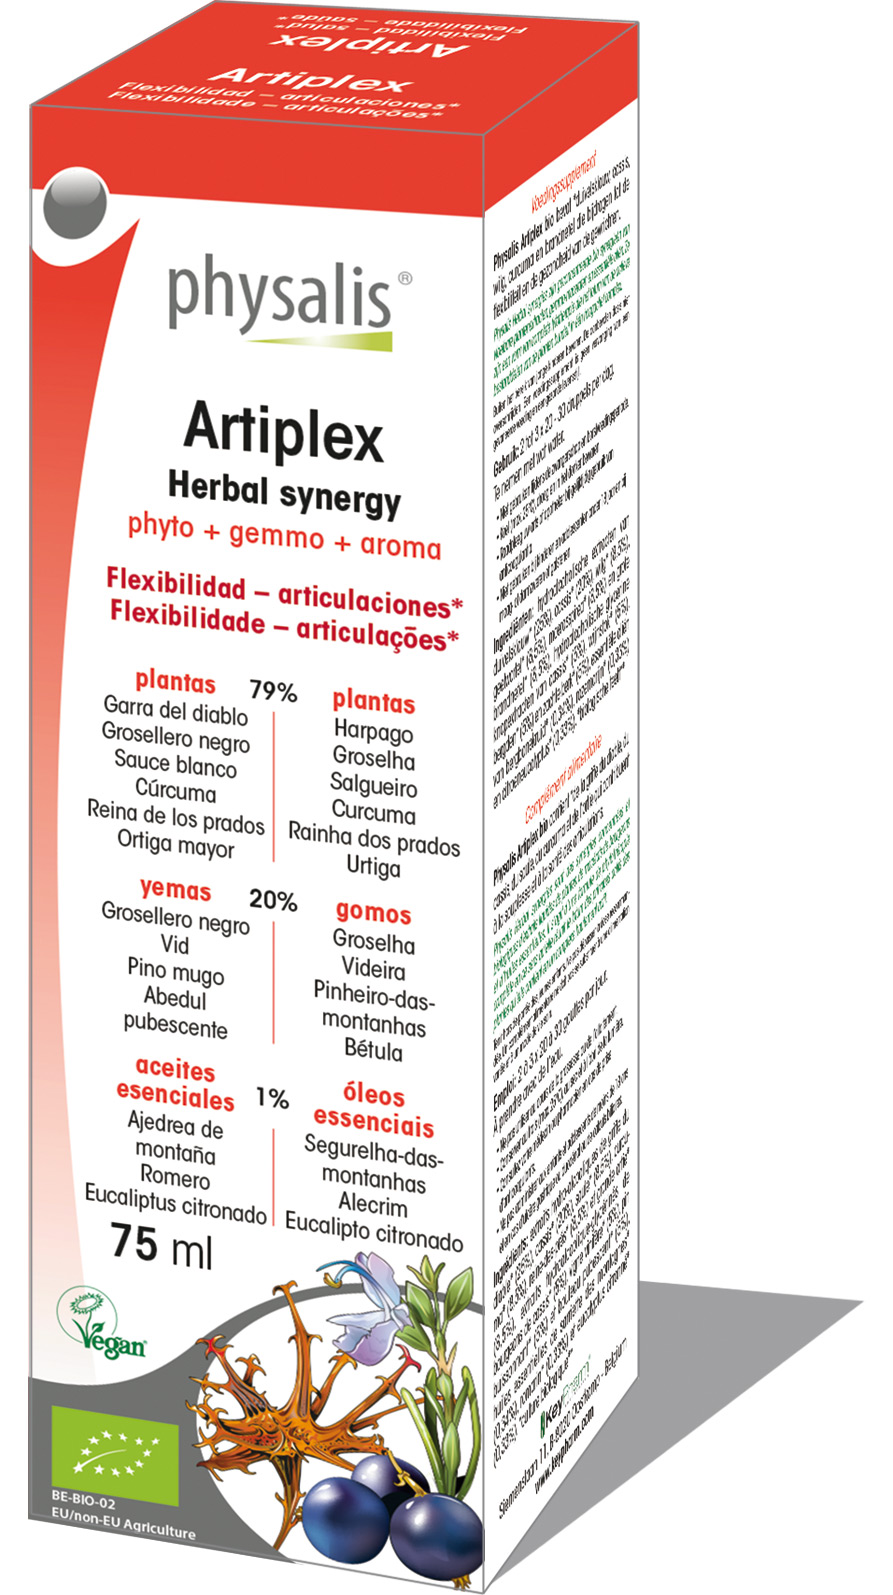 Artiplex - Herbal synergy